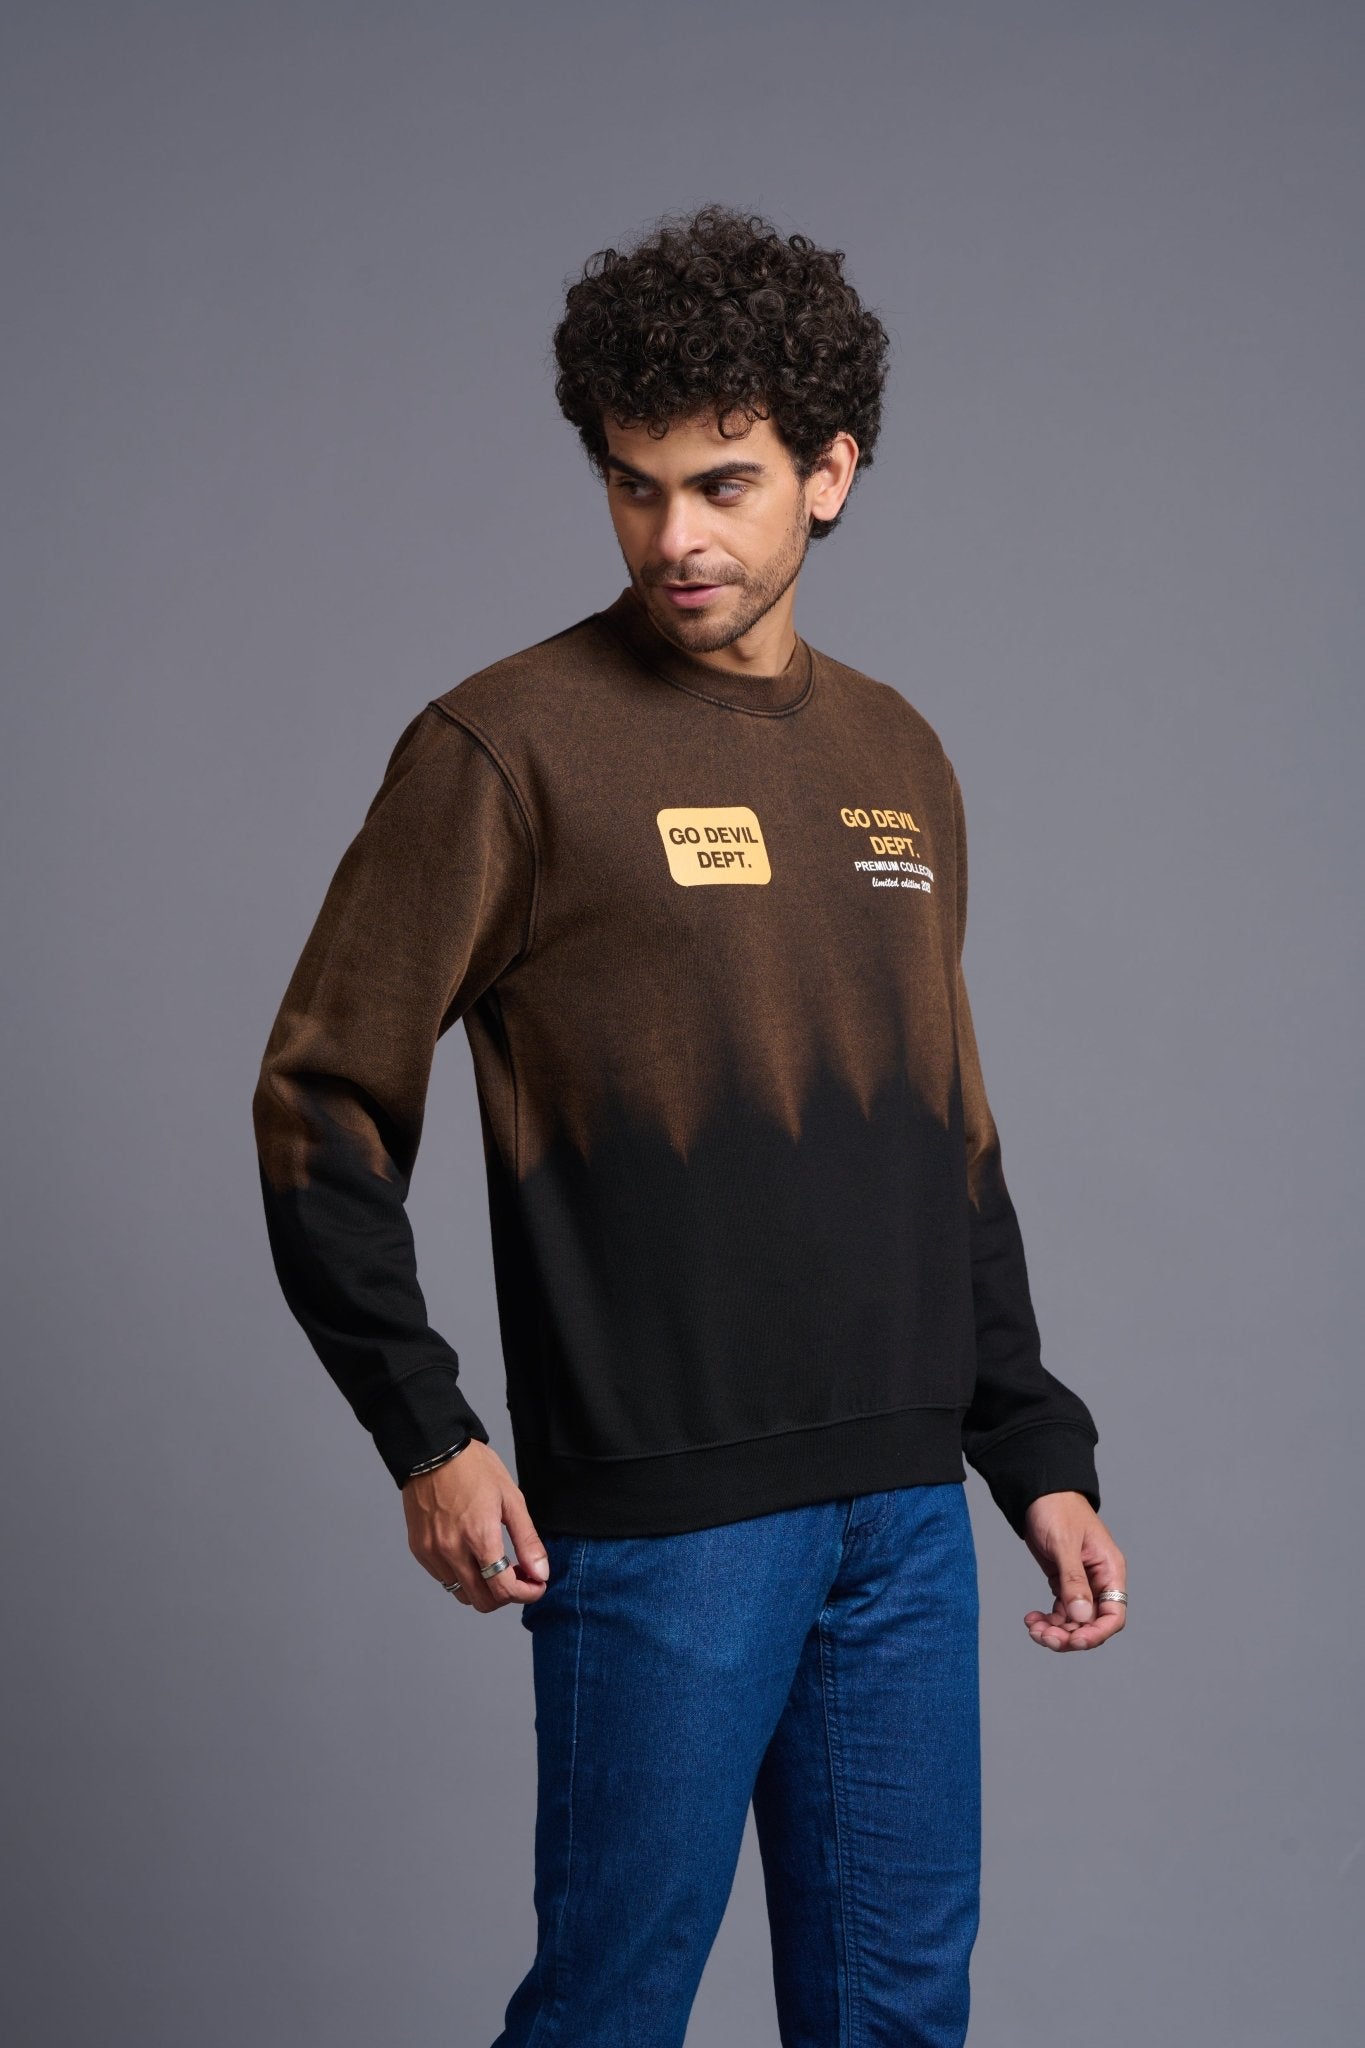 Go Devil Dept. Printed Brown Sweatshirt for Men - Go Devil